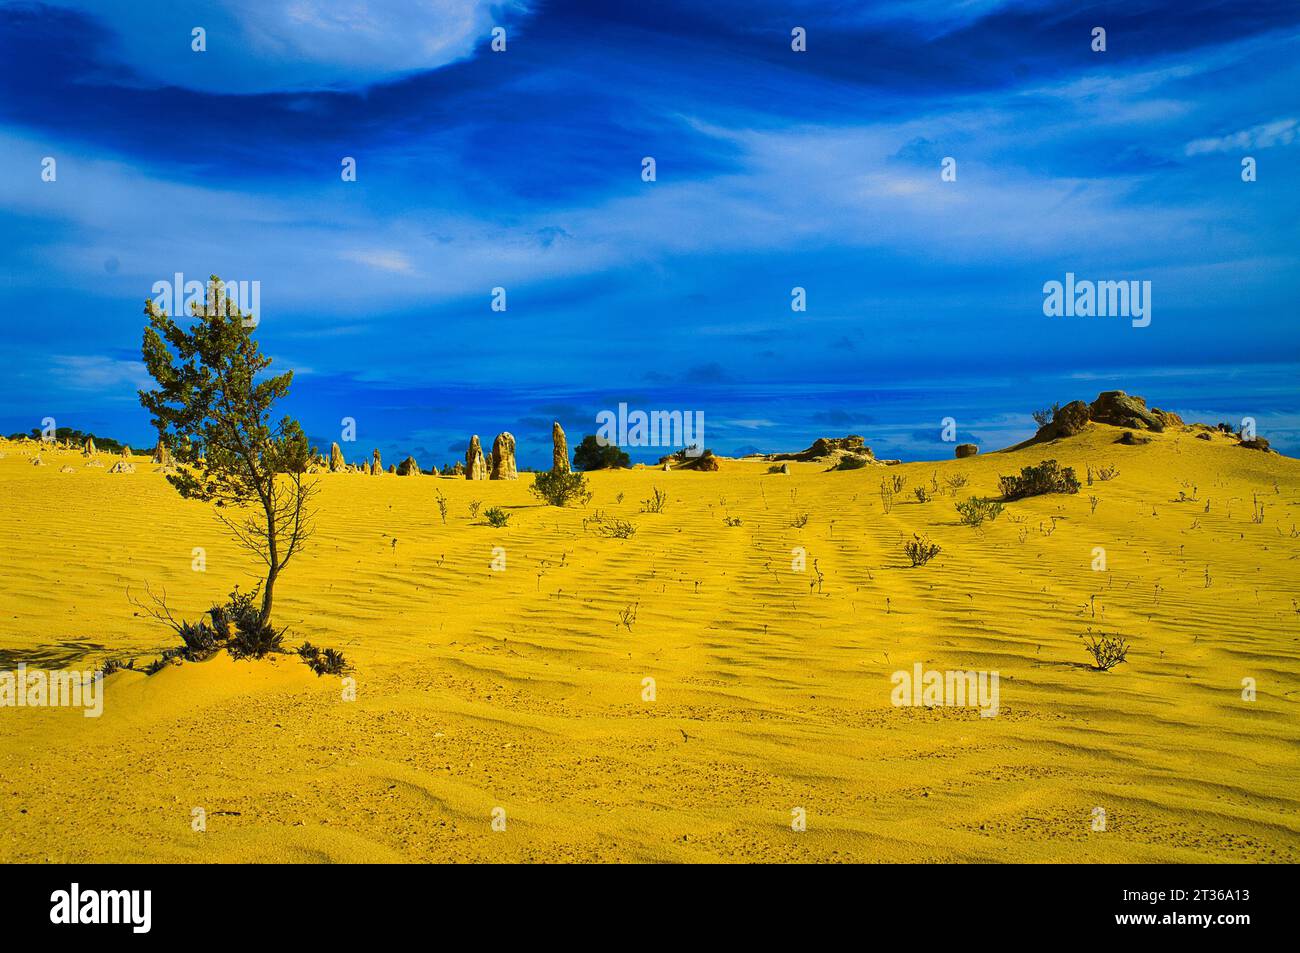 Surrealistische Wüstenlandschaft mit ockergelbem Rippensand, Felsen, Zinnen und einem harten blauen Himmel mit schimmernden Wolken Stockfoto